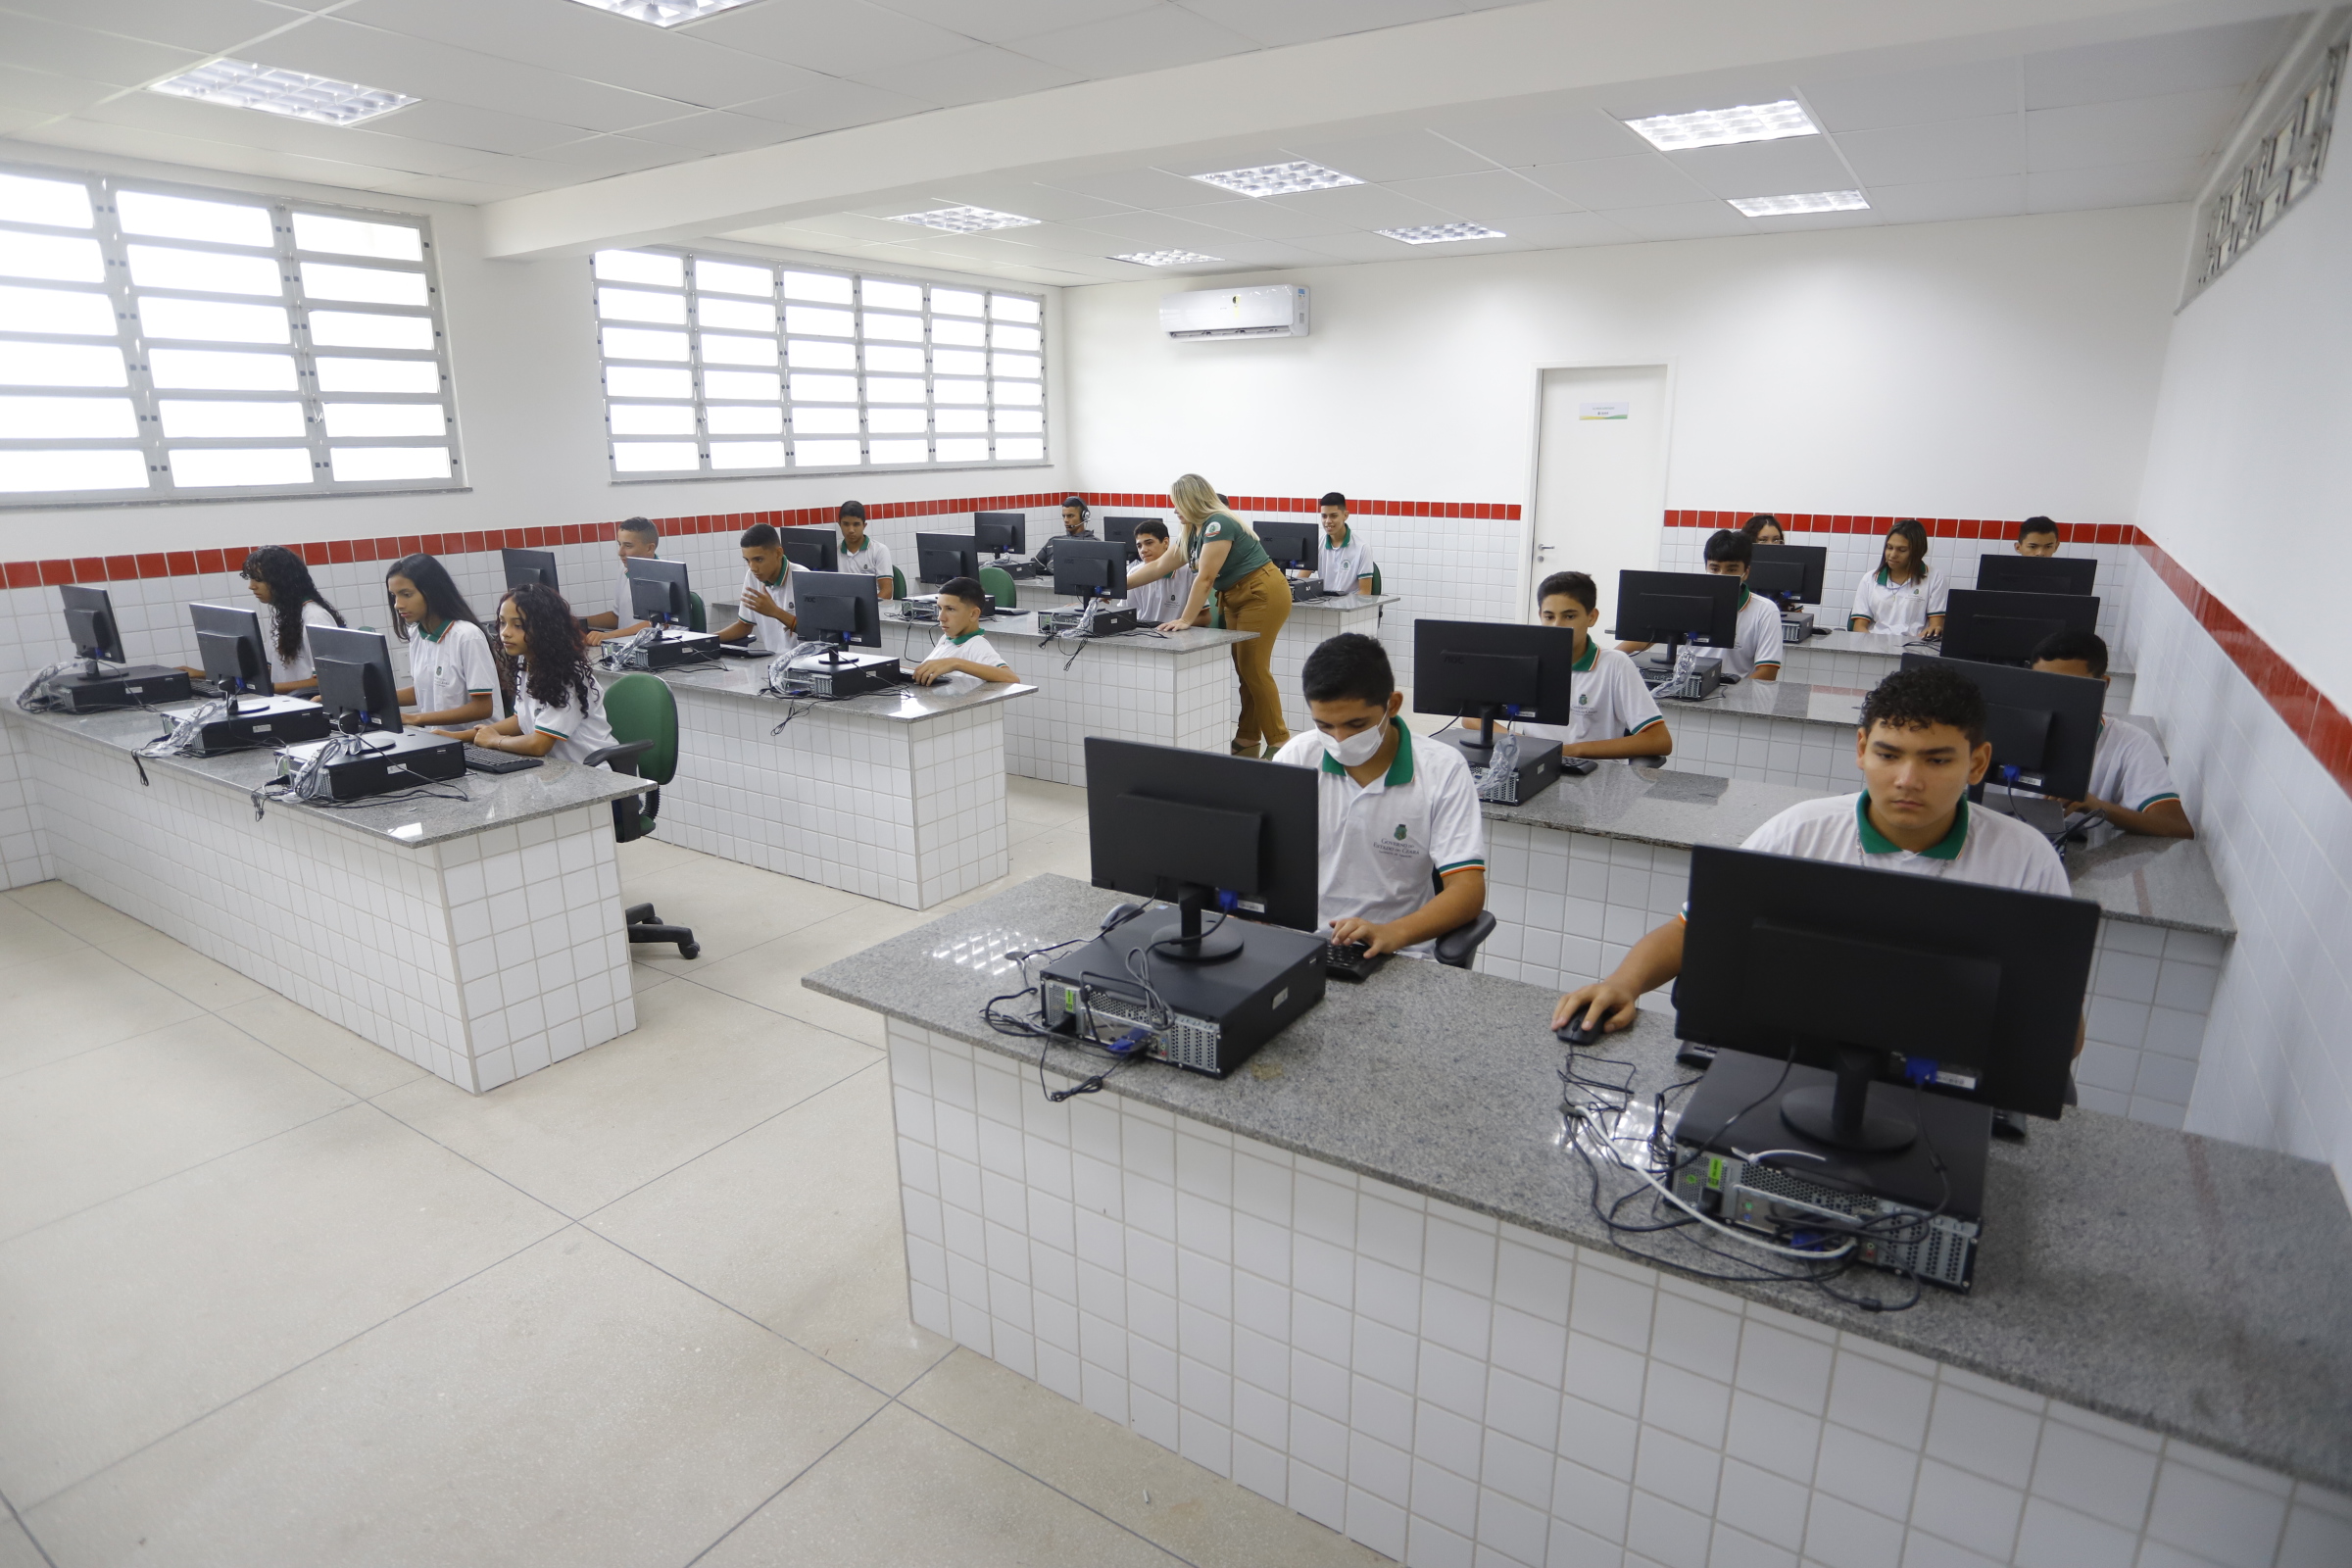 Juventude de Itatira terá mais oportunidades com nova Escola de Educação Profissional